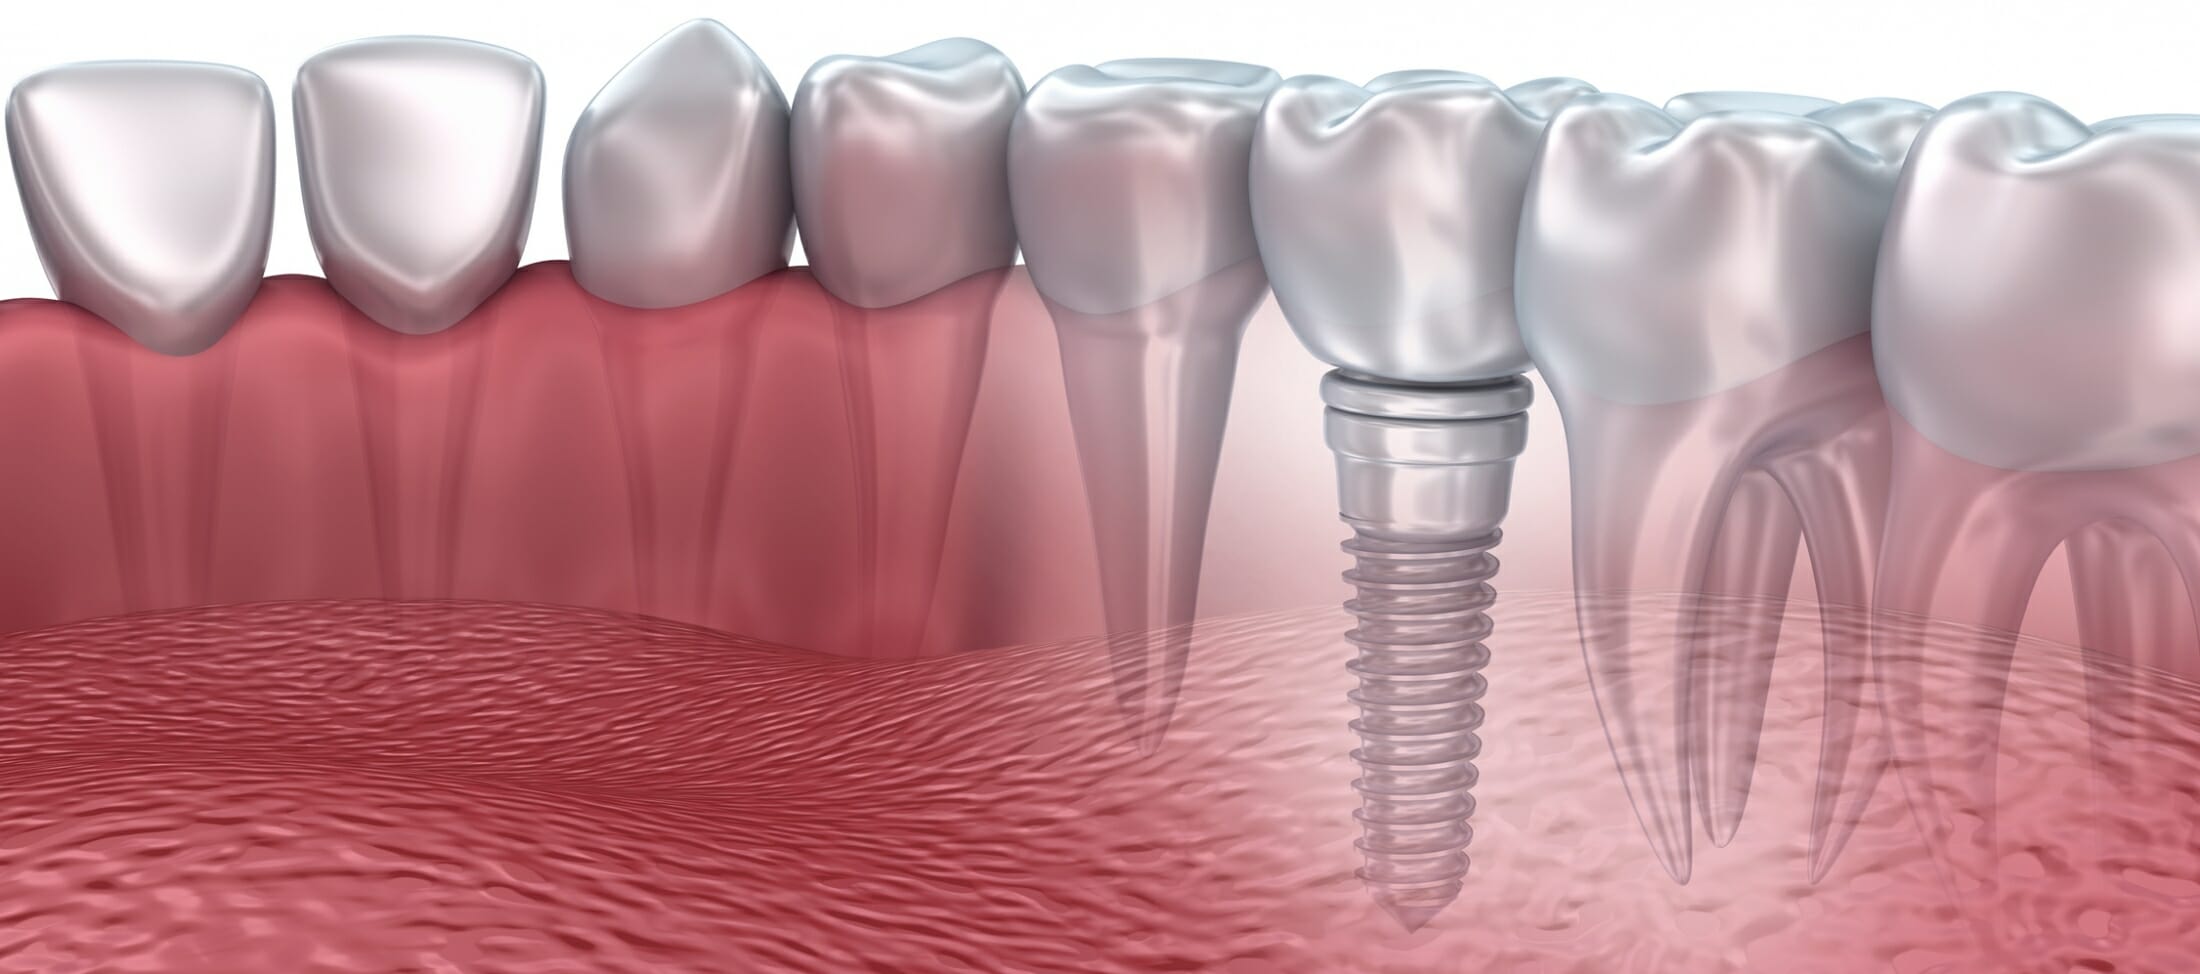 el-auge-de-la-implantolog-a-oral-es-realmente-un-tratamiento-adecuado